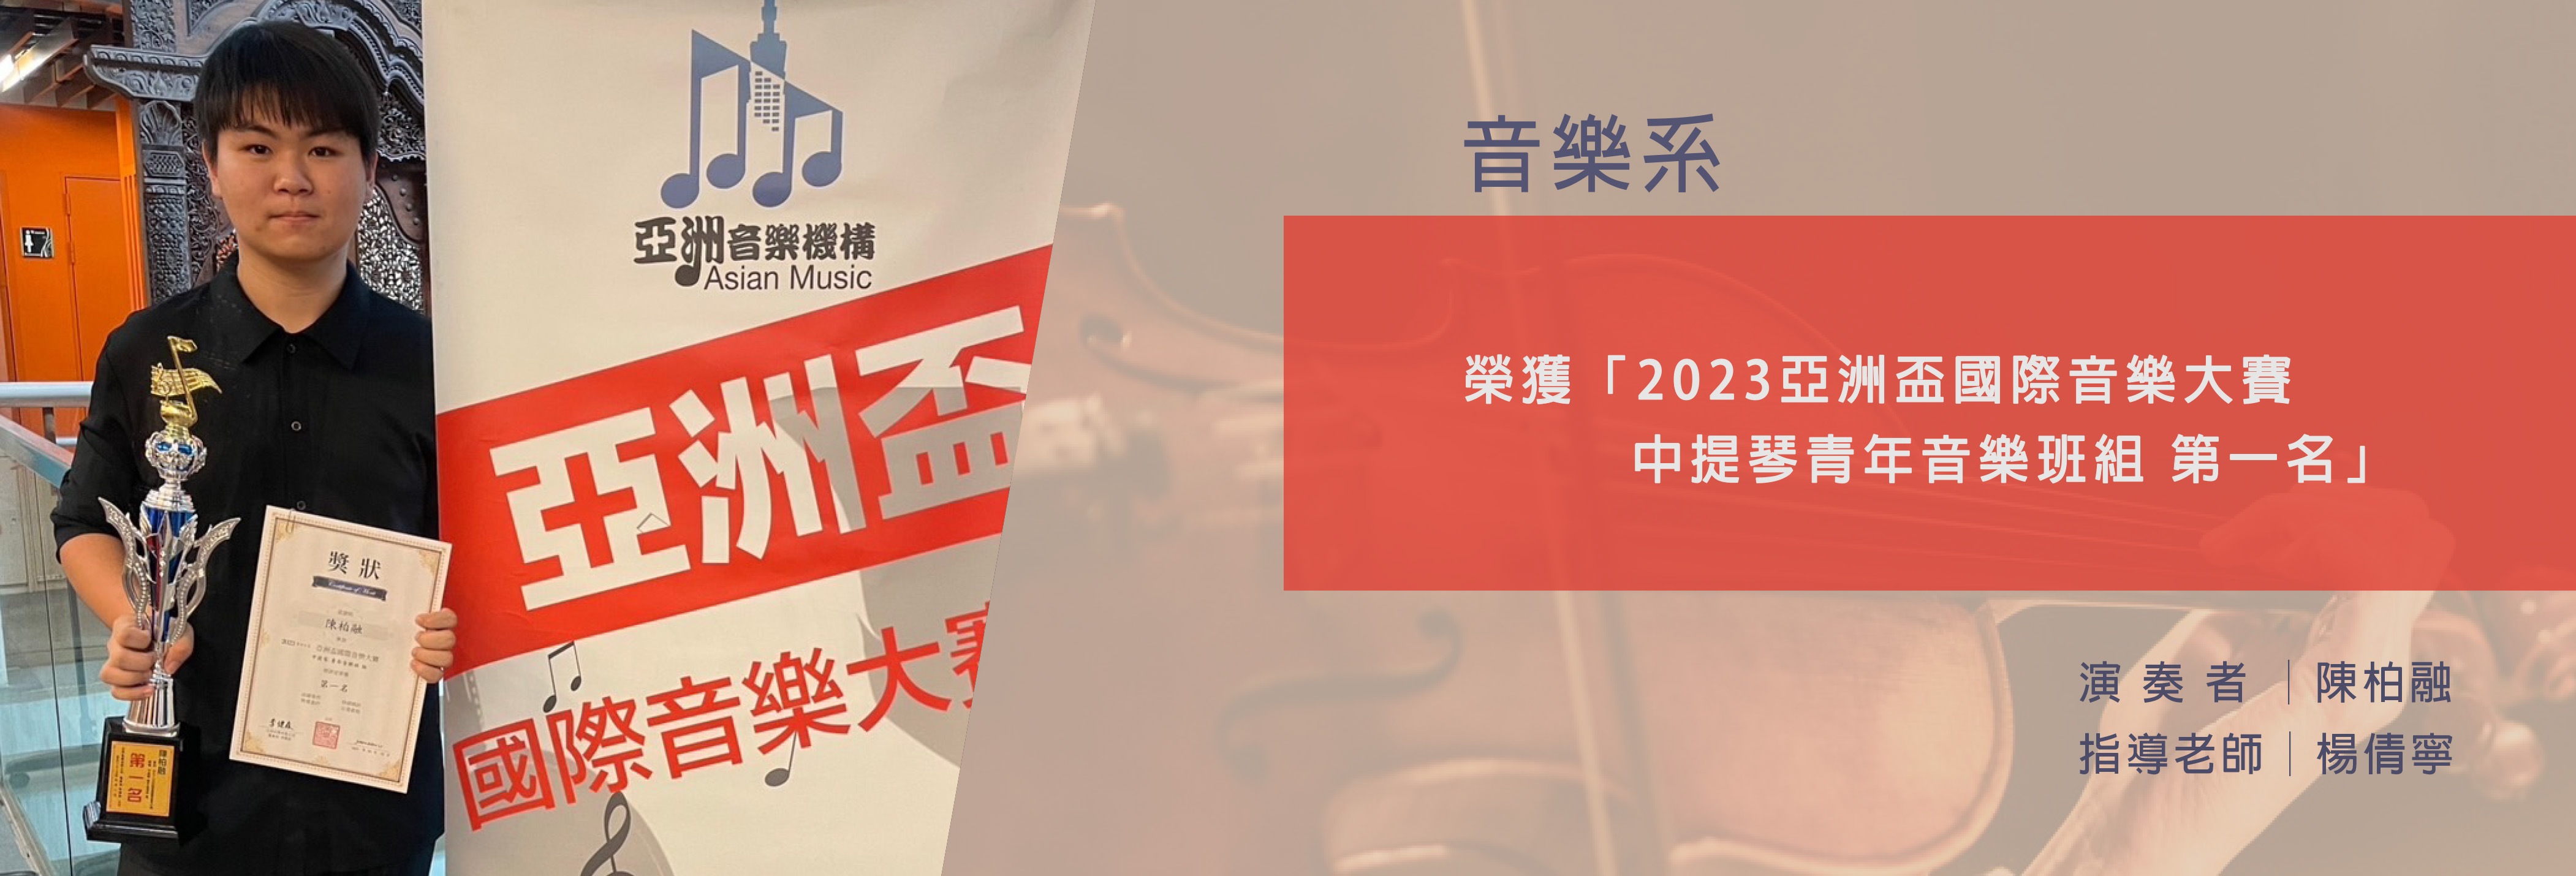 中提琴青年音樂班組-陳柏融